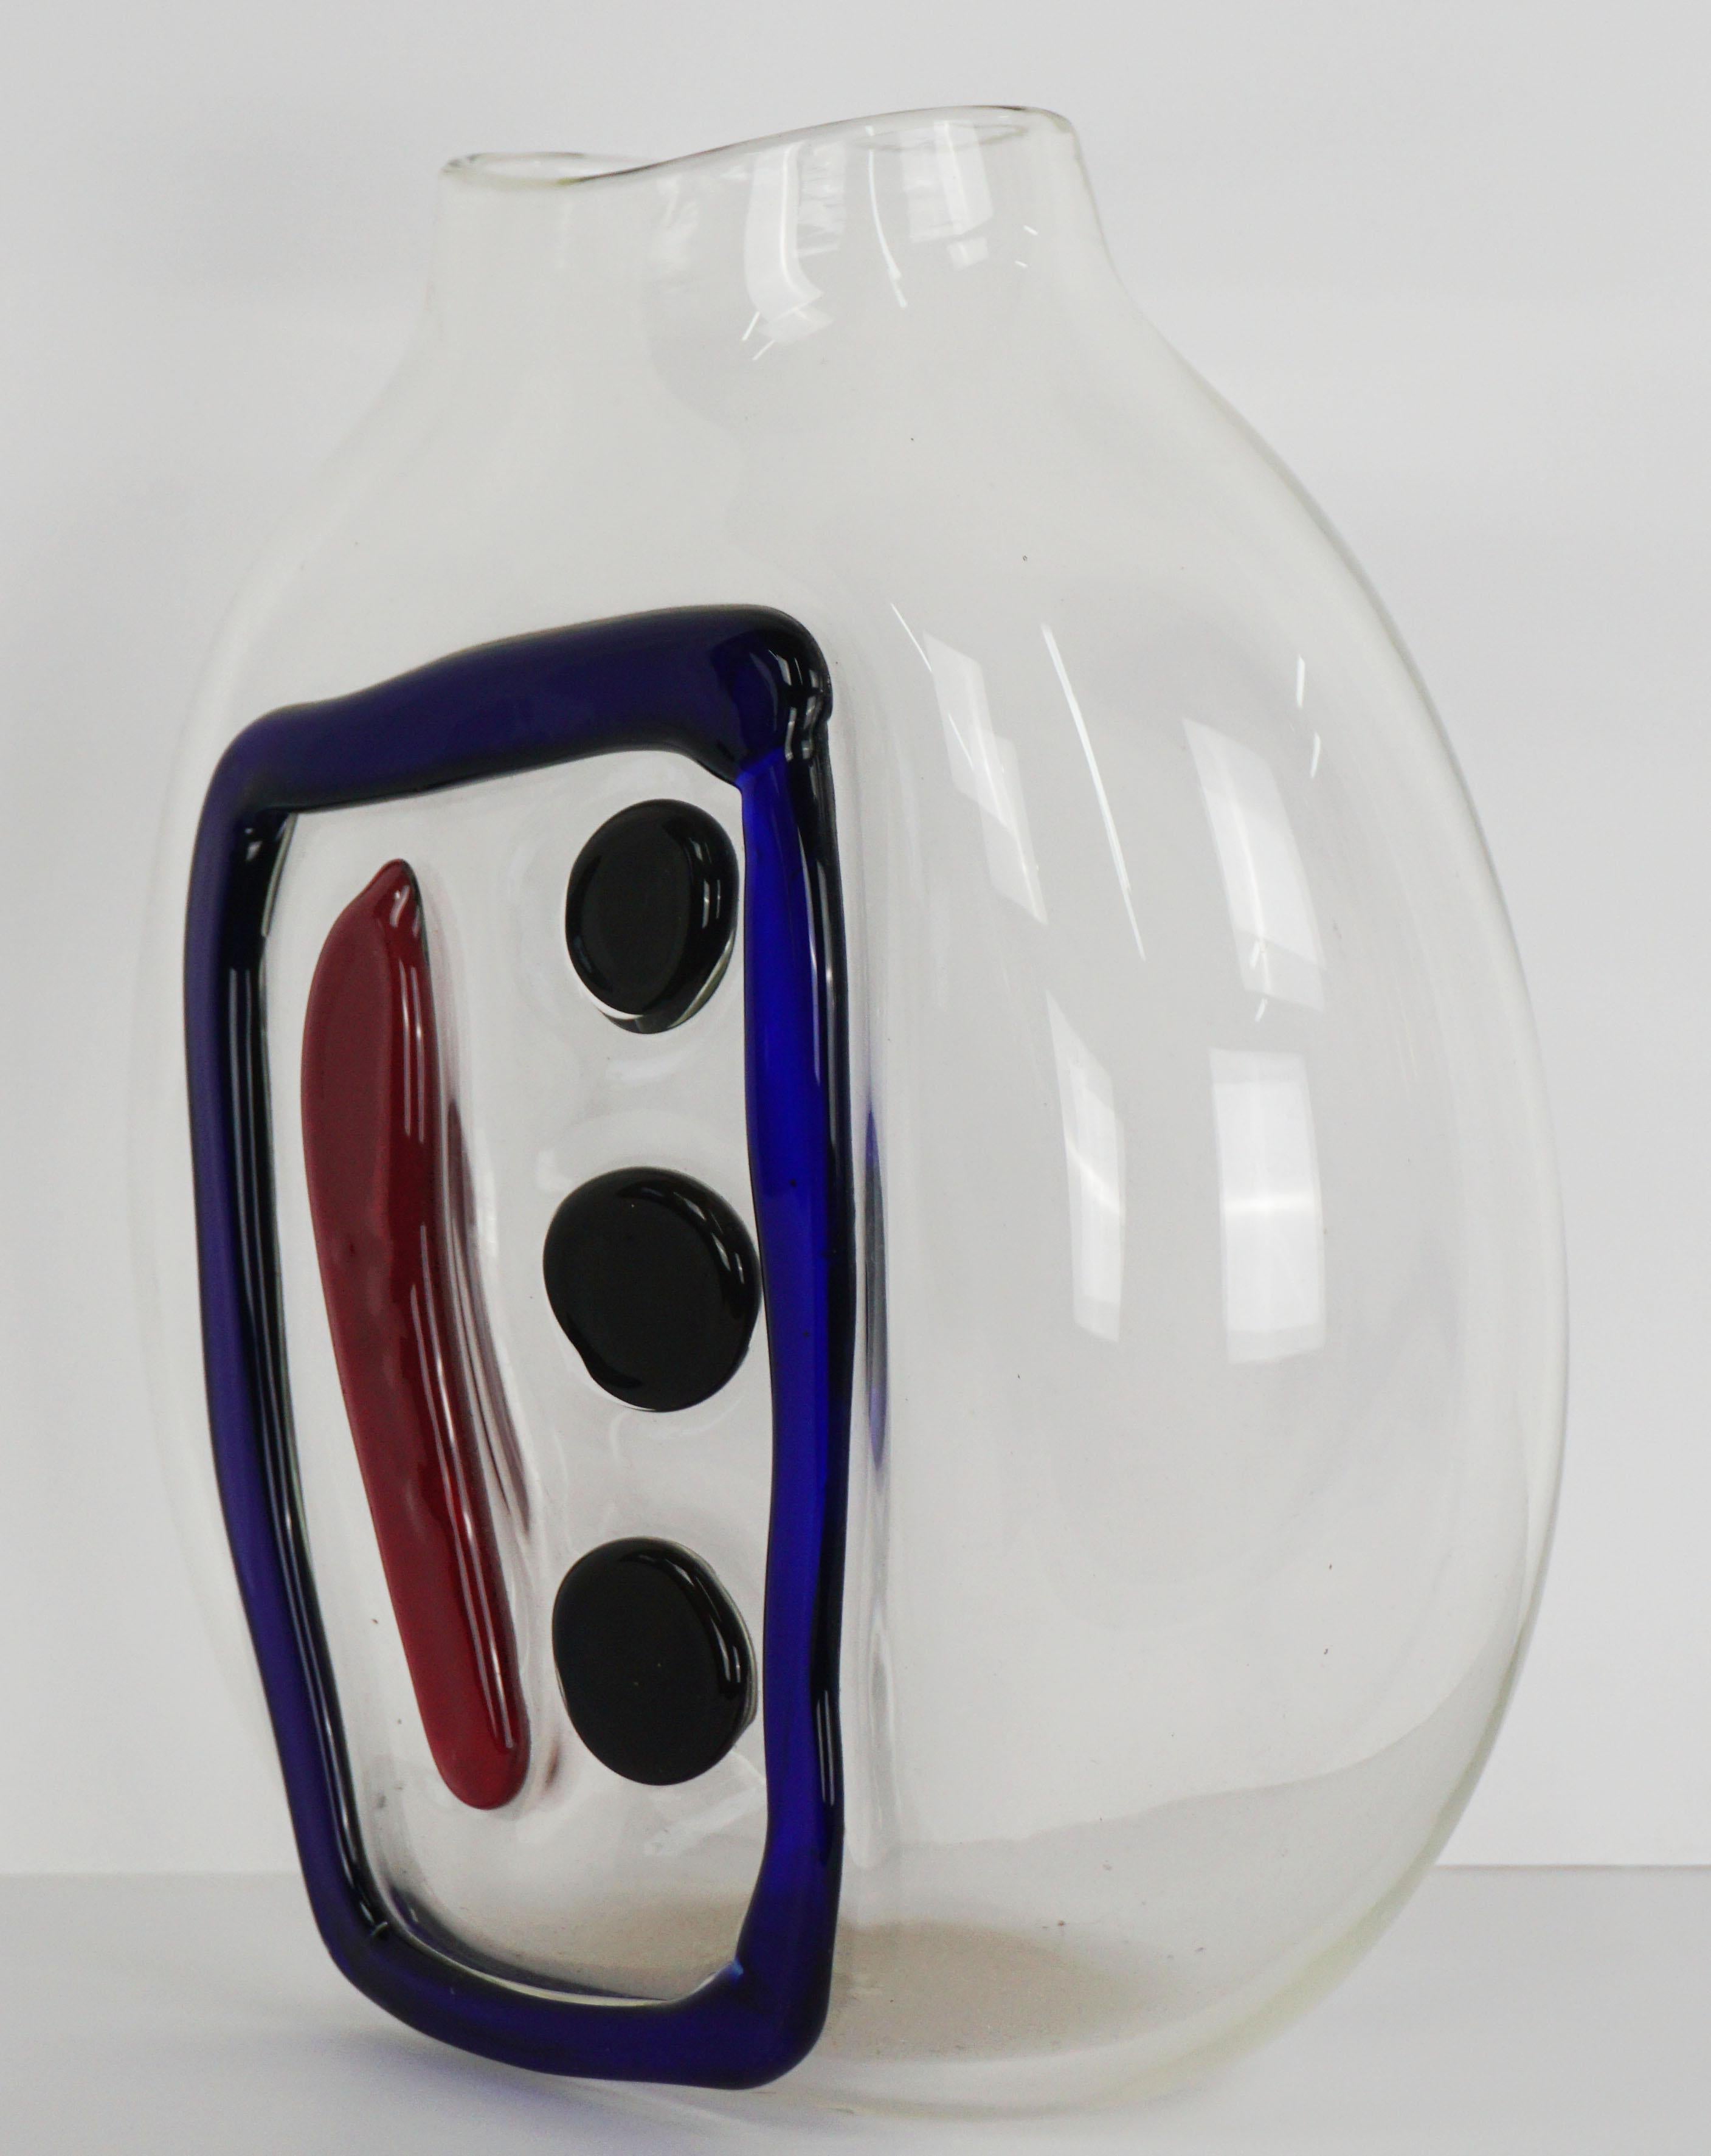 Wunderbar moderne Vase aus mundgeblasenem Klarglas mit kastenförmigem Strich und drei Punkten von Nadine Saylor (Amerikanerin, 20. Jahrhundert), 2004. Signiert und datiert am Boden. Zustand: Ausgezeichnet. Maße: 10,5 